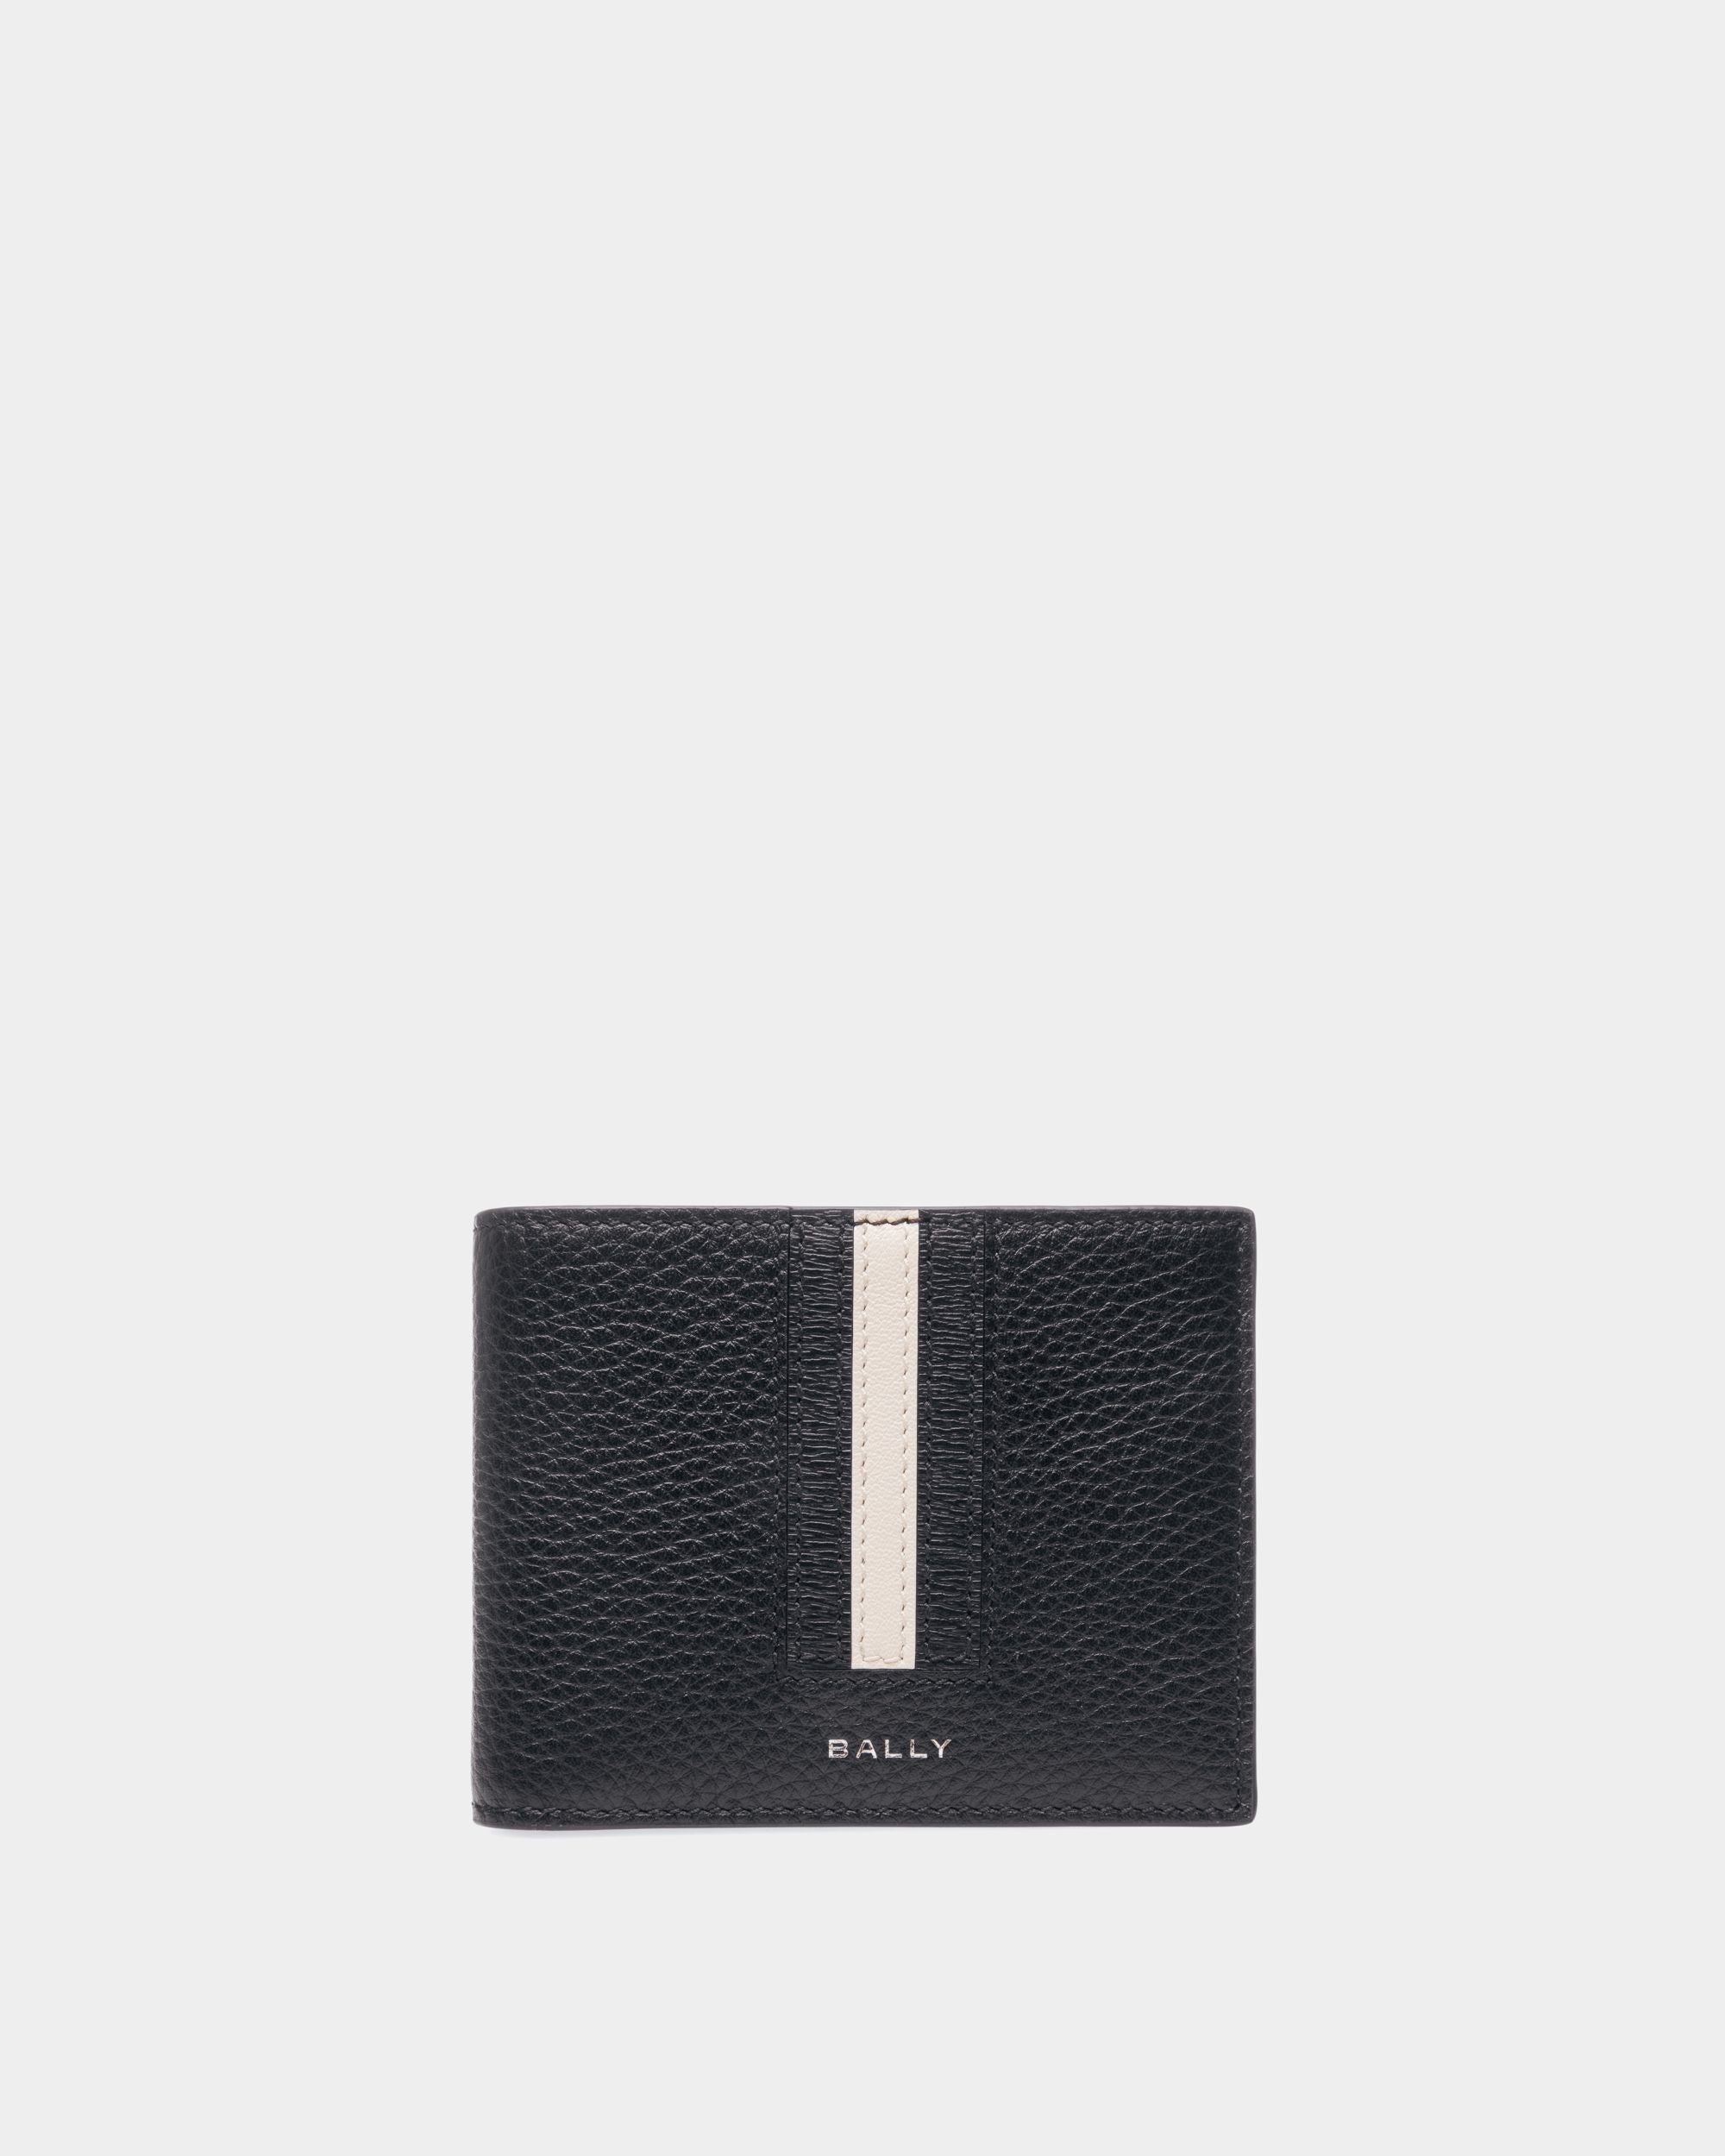 Ribbon Bi-fold Wallet | Men's Wallet | Midnight Leather | Bally | Still Life Front